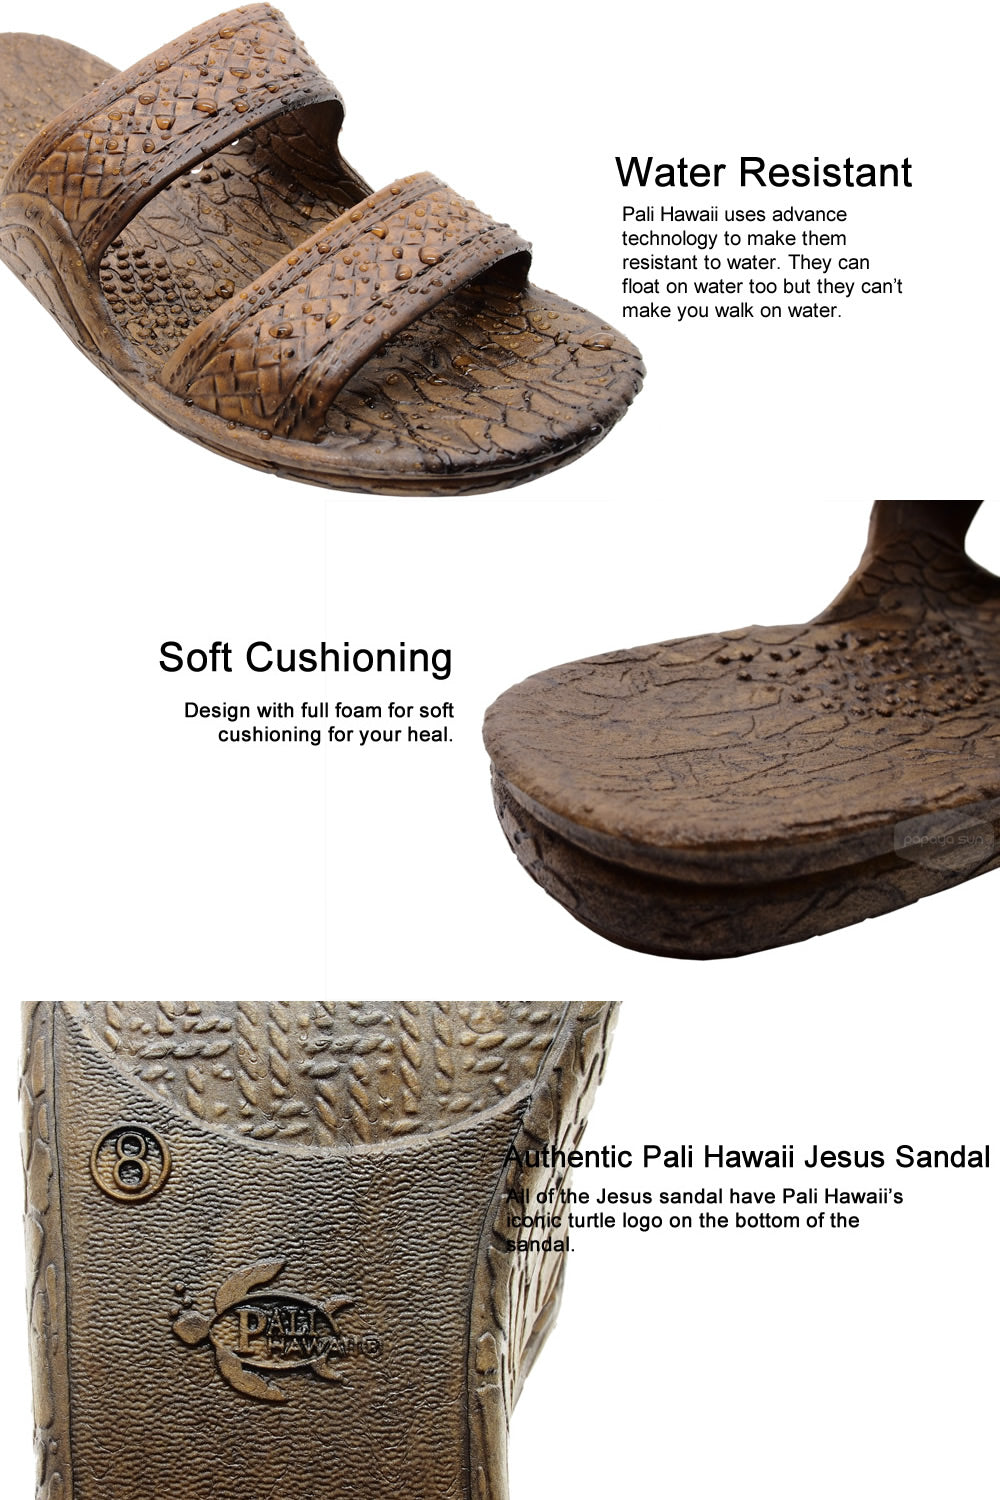 jesus sandal features